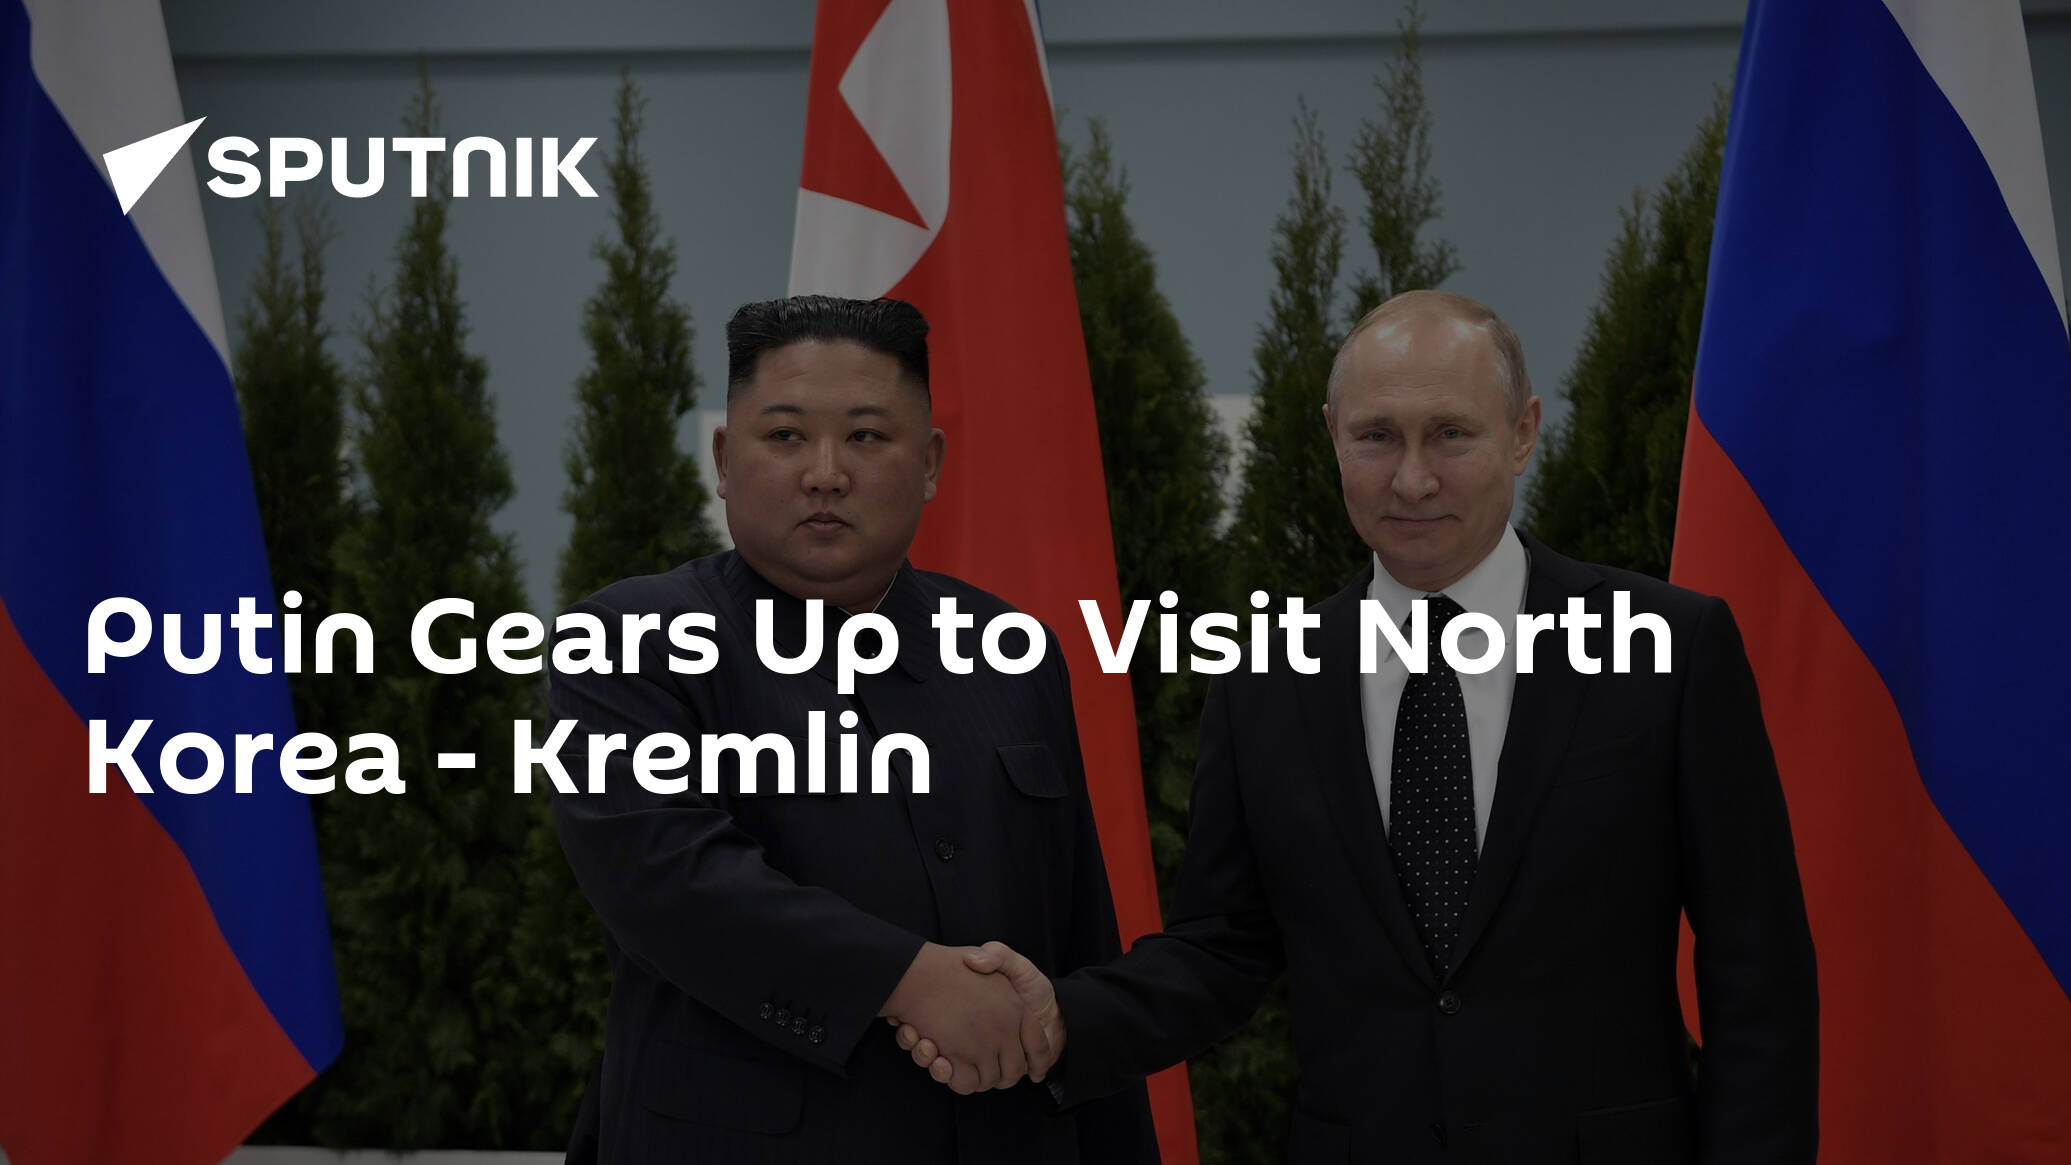 Putin Preparing to Visit North Korea - Kremlin